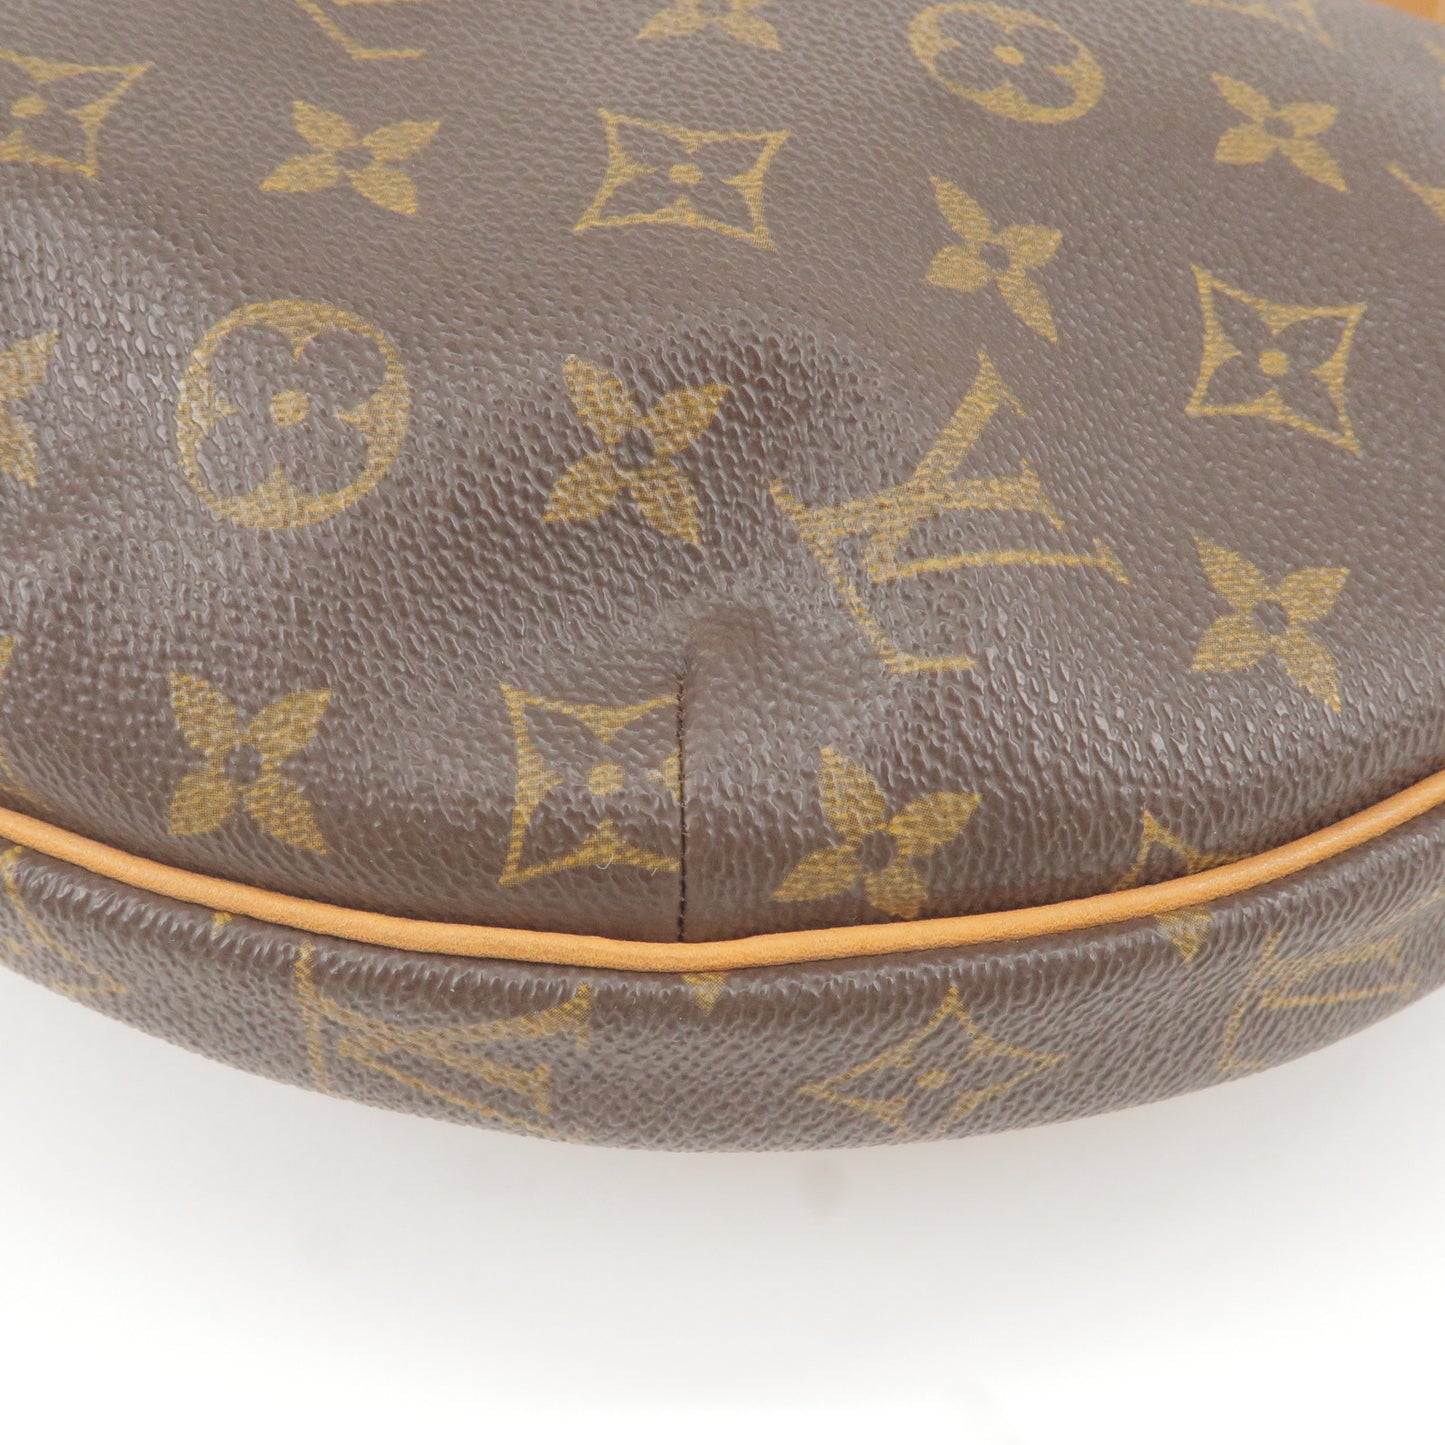 LOUIS VUITTON MONOGRAM Croissant MM Handbag Shoulder Bag M51512 #5